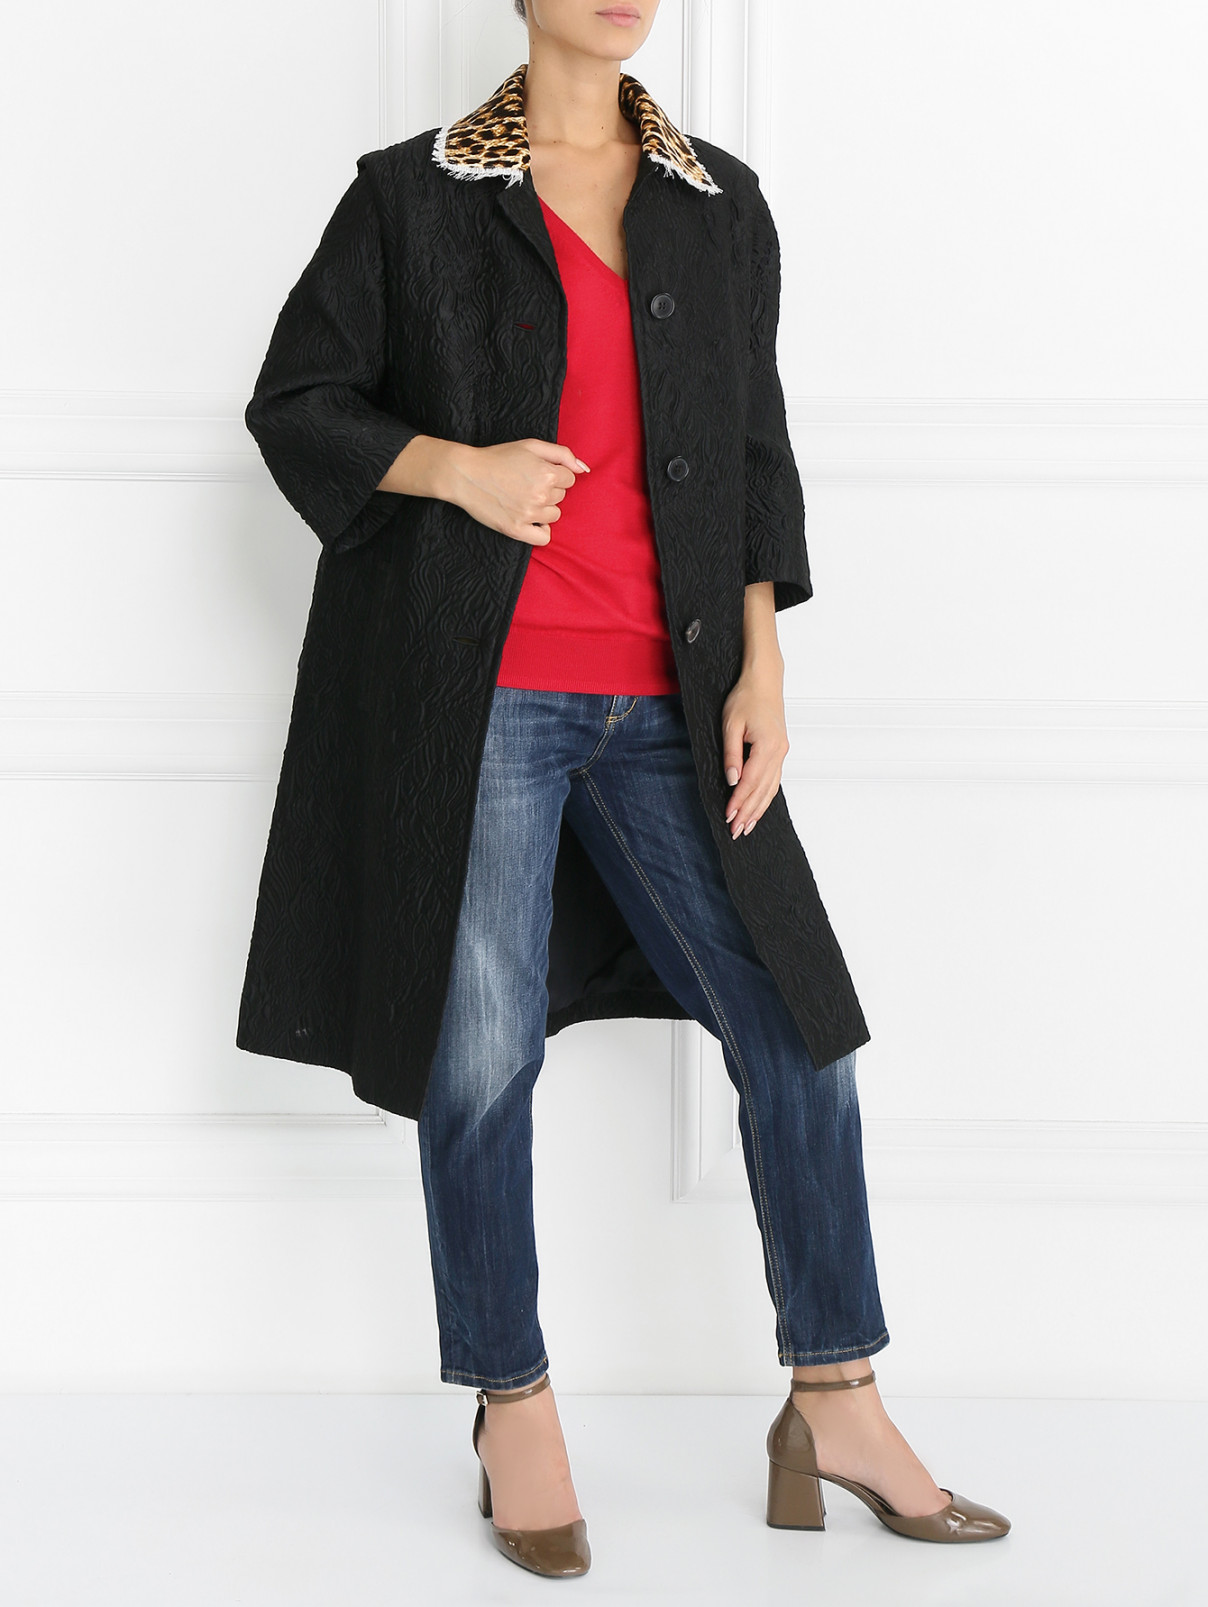 Пальто из фактурной ткани с принтом на спине Maison Margiela  –  Модель Общий вид  – Цвет:  Черный